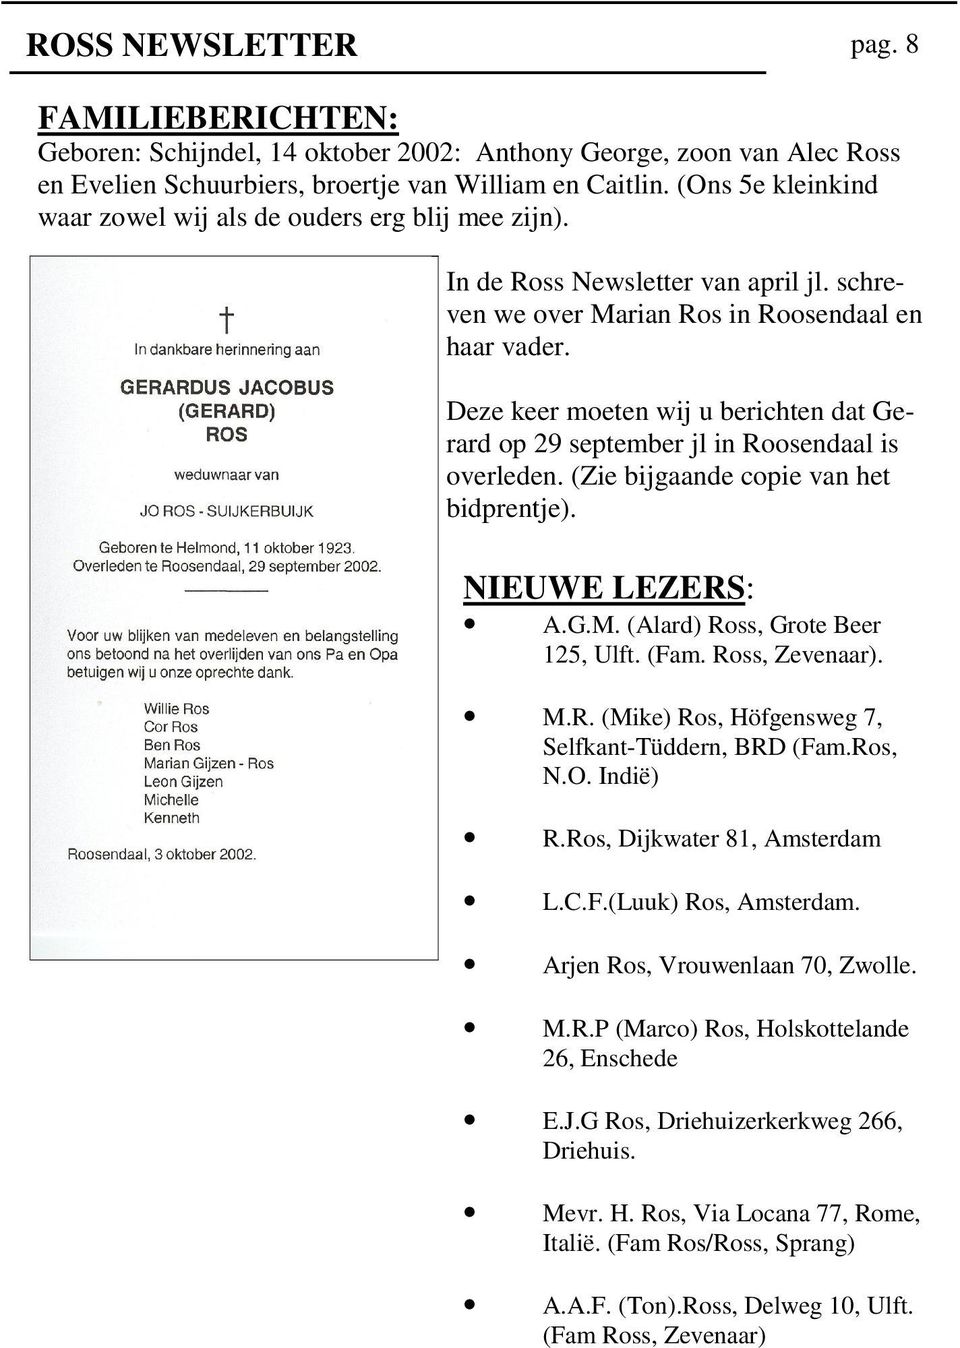 Deze keer moeten wij u berichten dat Gerard op 29 september jl in Roosendaal is overleden. (Zie bijgaande copie van het bidprentje). NIEUWE LEZERS: A.G.M. (Alard) Ross, Grote Beer 125, Ulft. (Fam.